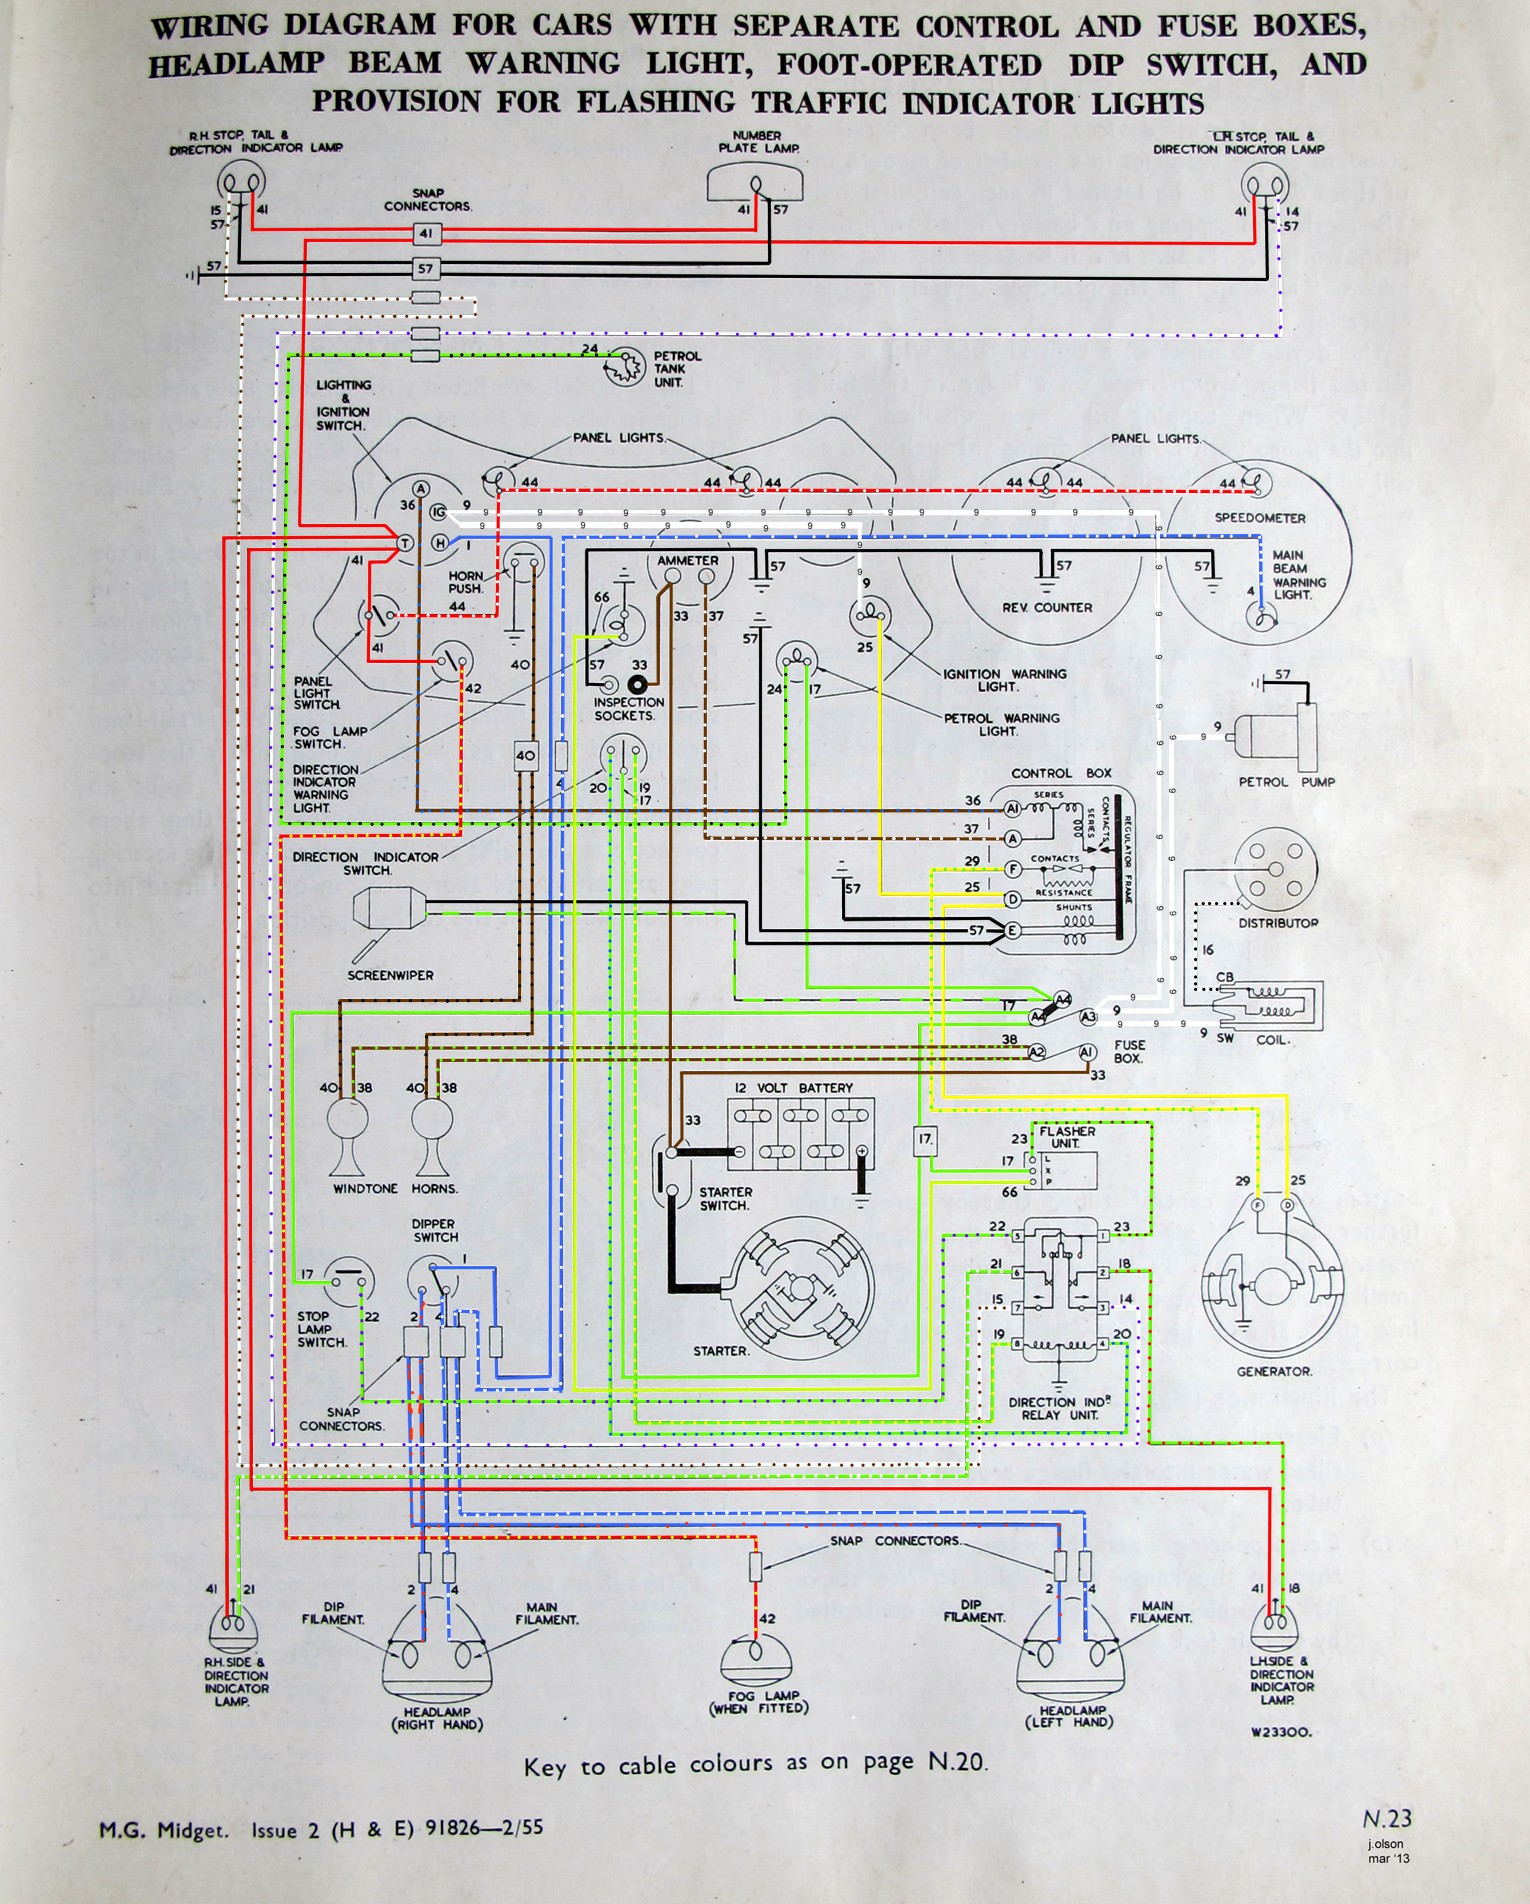 wiring diagram colour.jpg